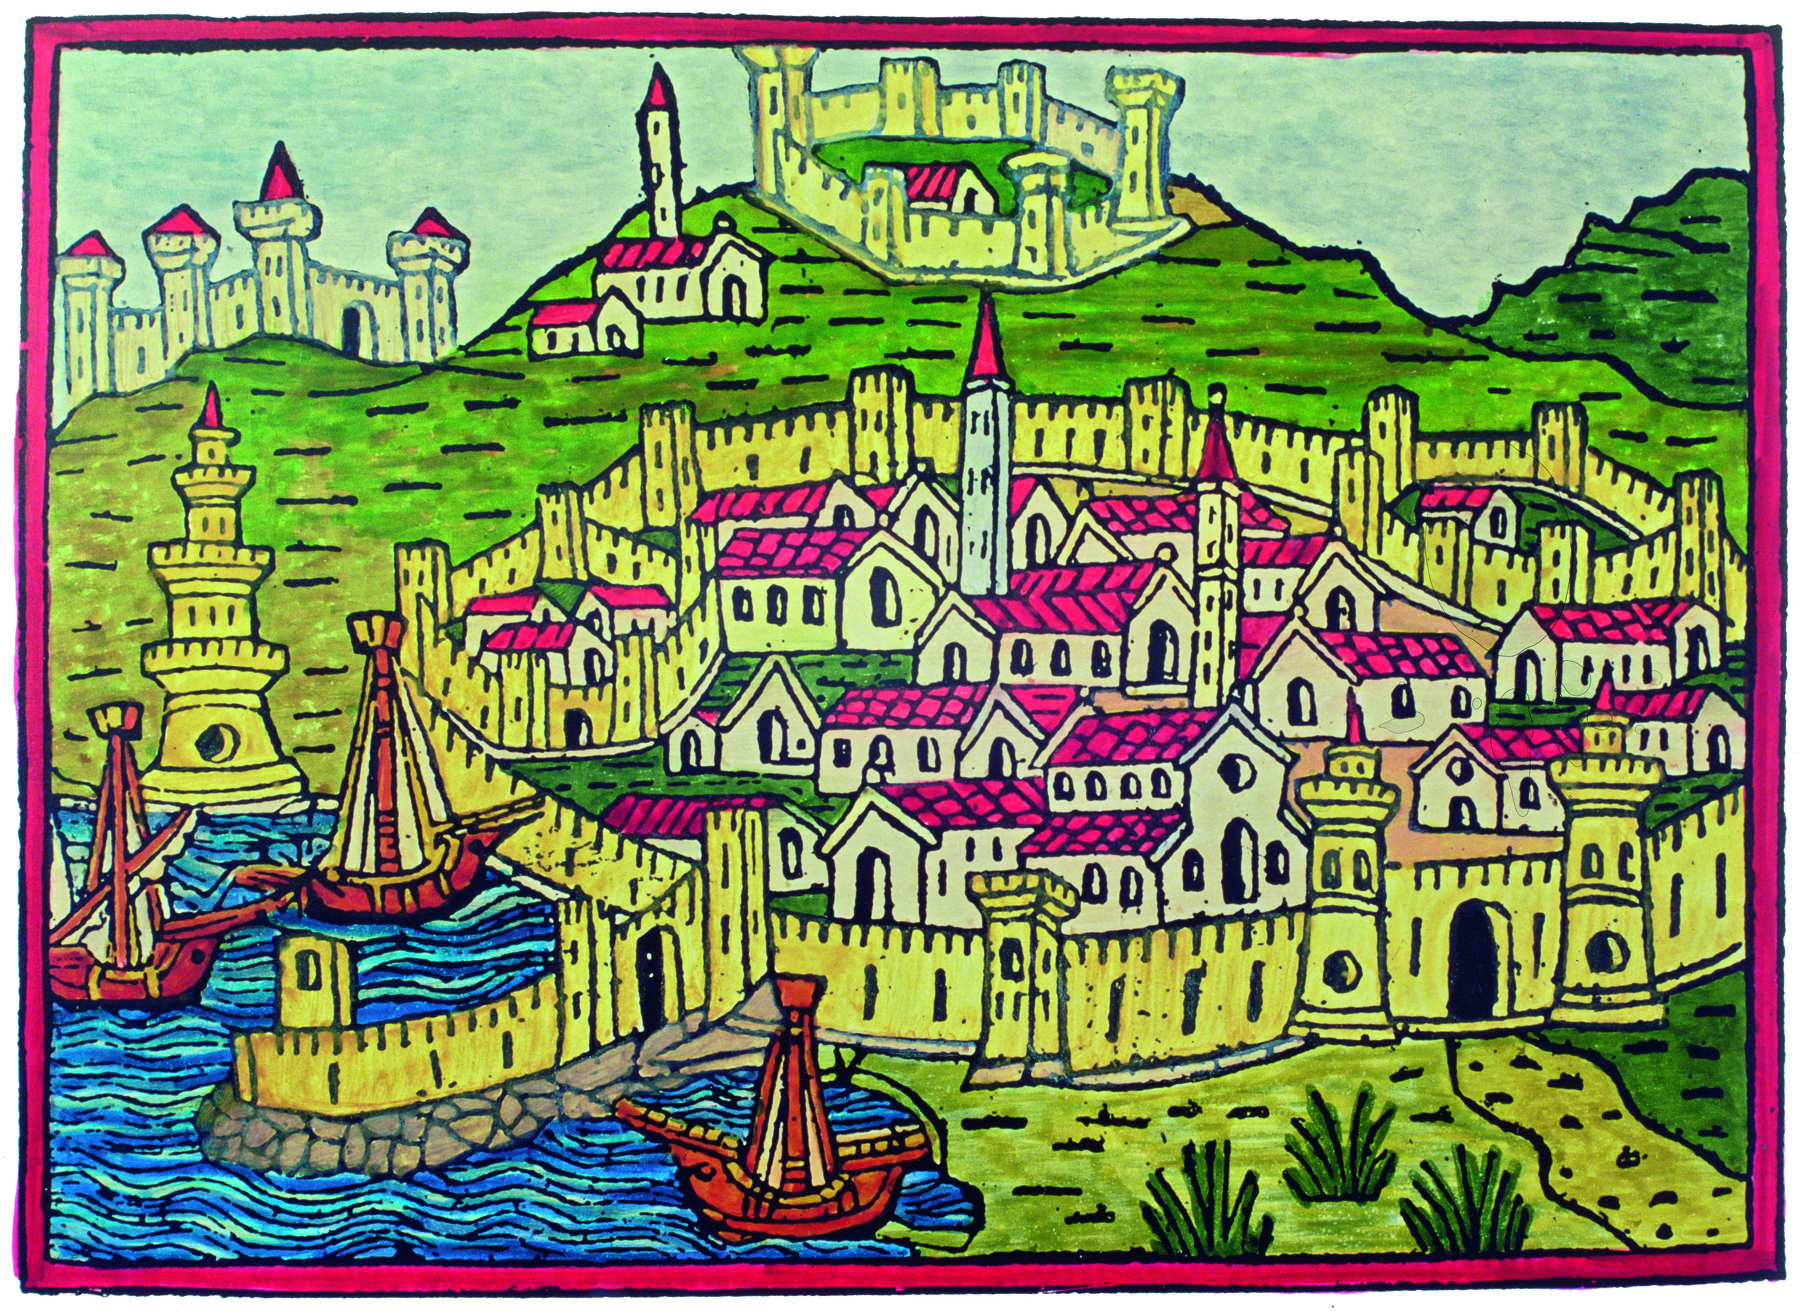 Xilogravura. Representação  de uma cidade cercada por muralhas de pedra e torres. No interior das muralhas há casas e torres. A cidade está à beira do mar e há três embarcações grandes no porto. Ao fundo, montes com vegetação e um castelo.